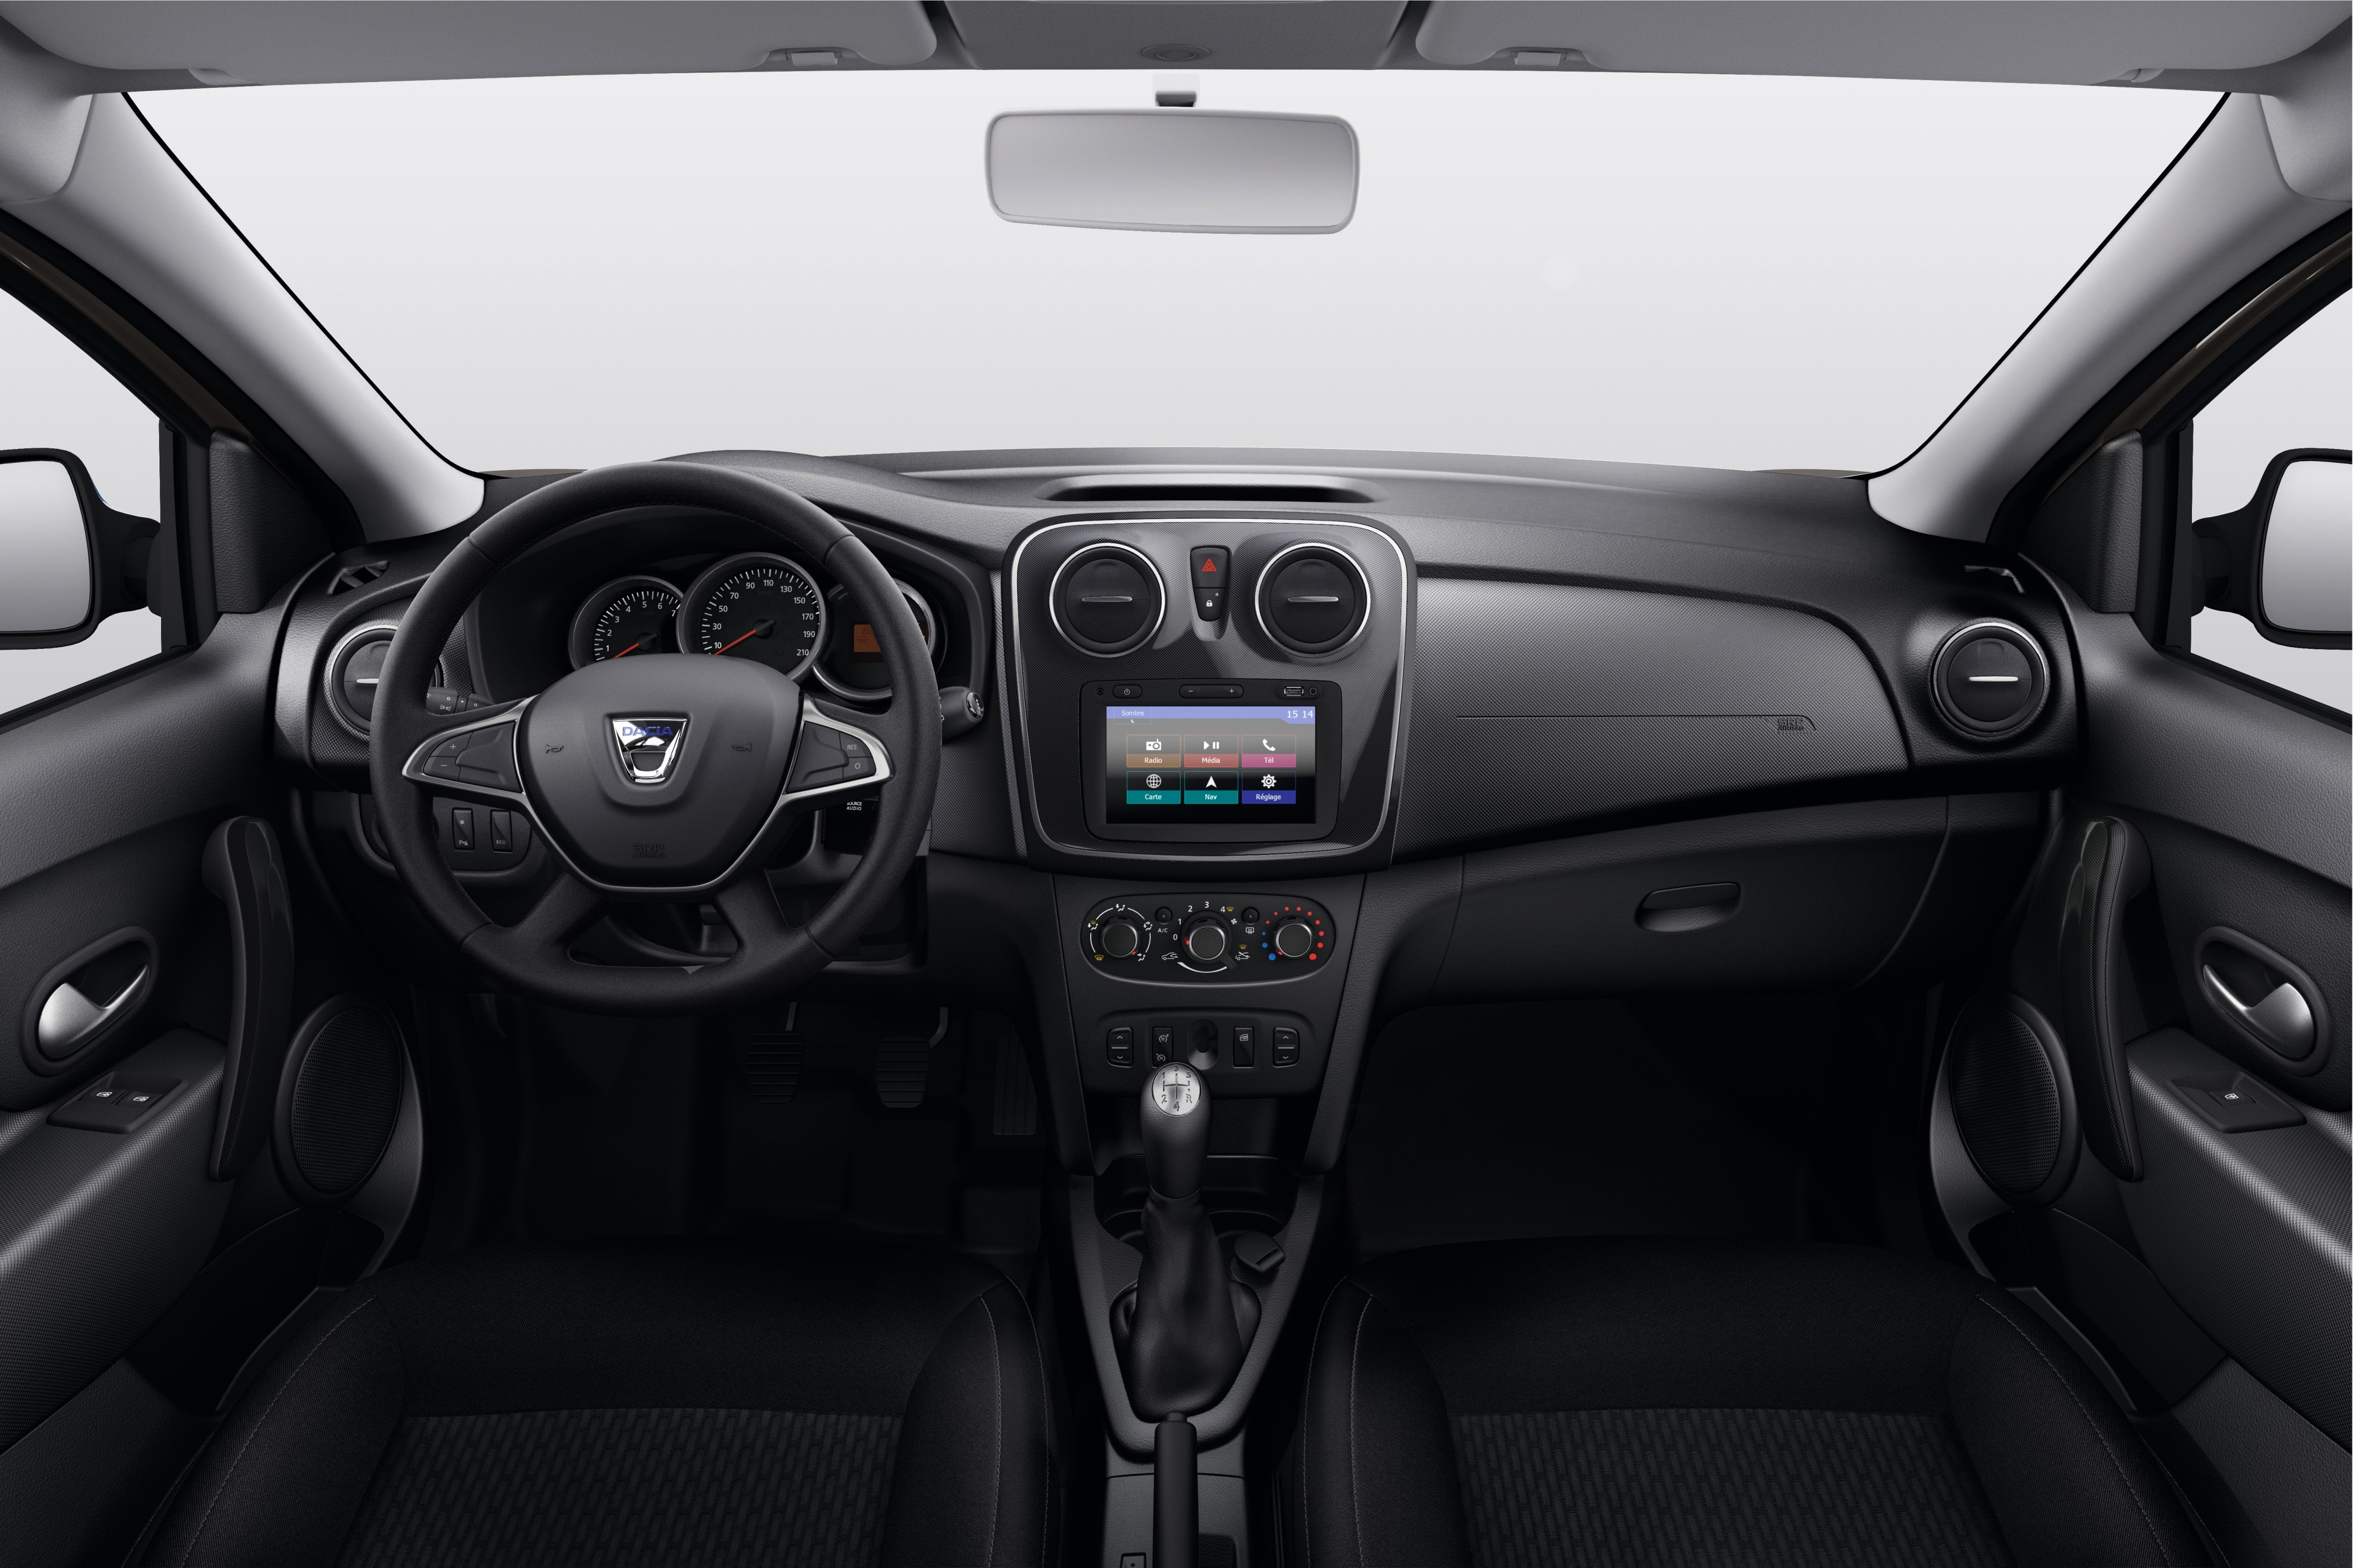 Dacia Logan interior Paris 2016